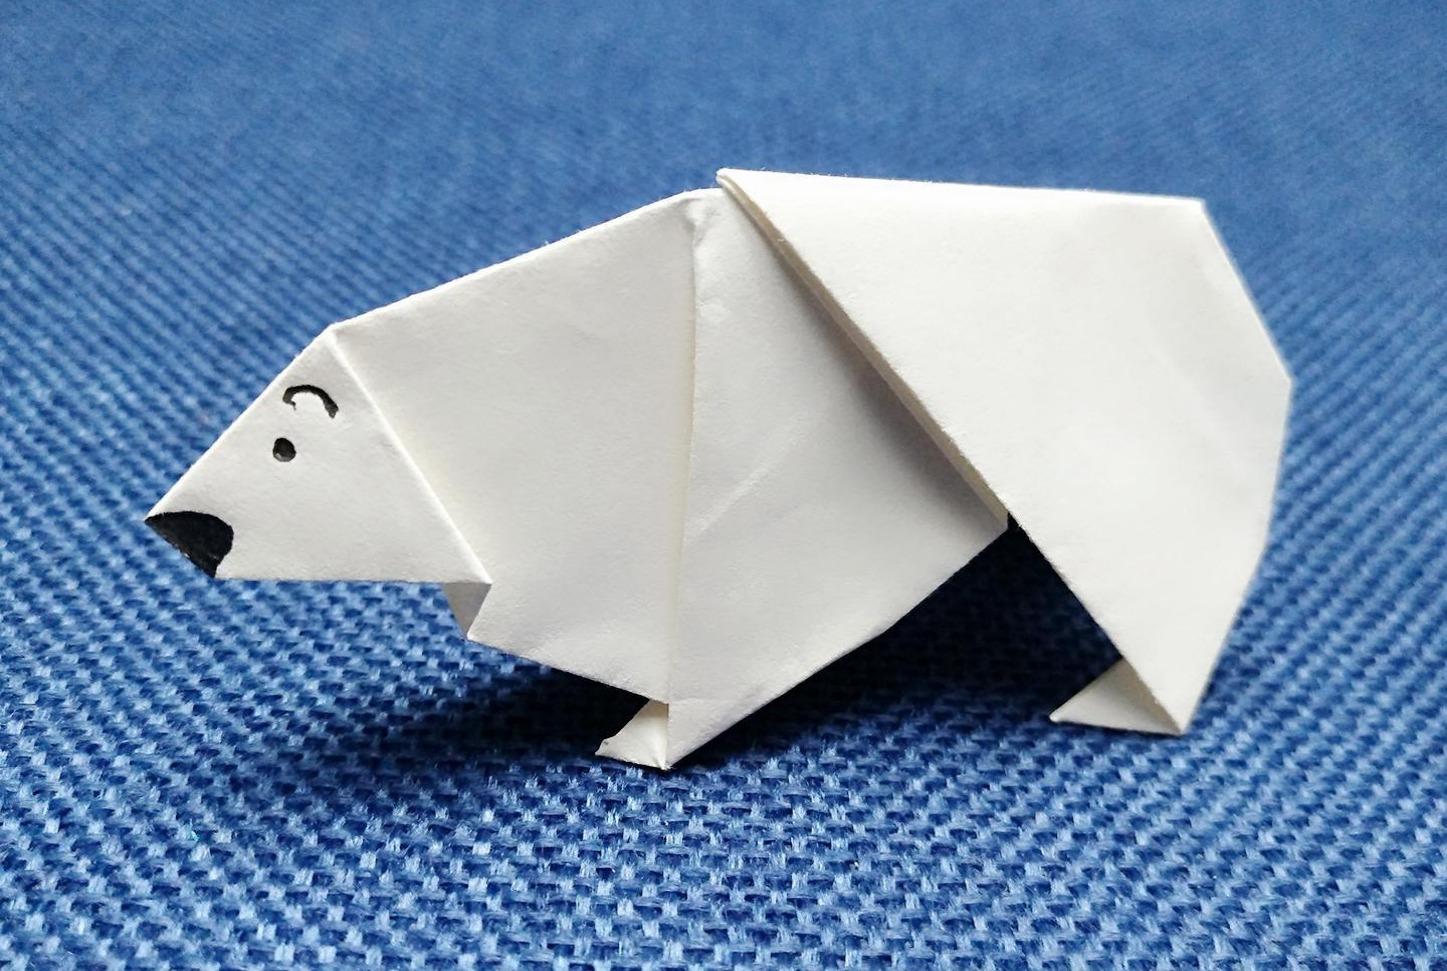 视频-创意动物巧手折纸教程:孩子轻松学会折北极熊的小妙招